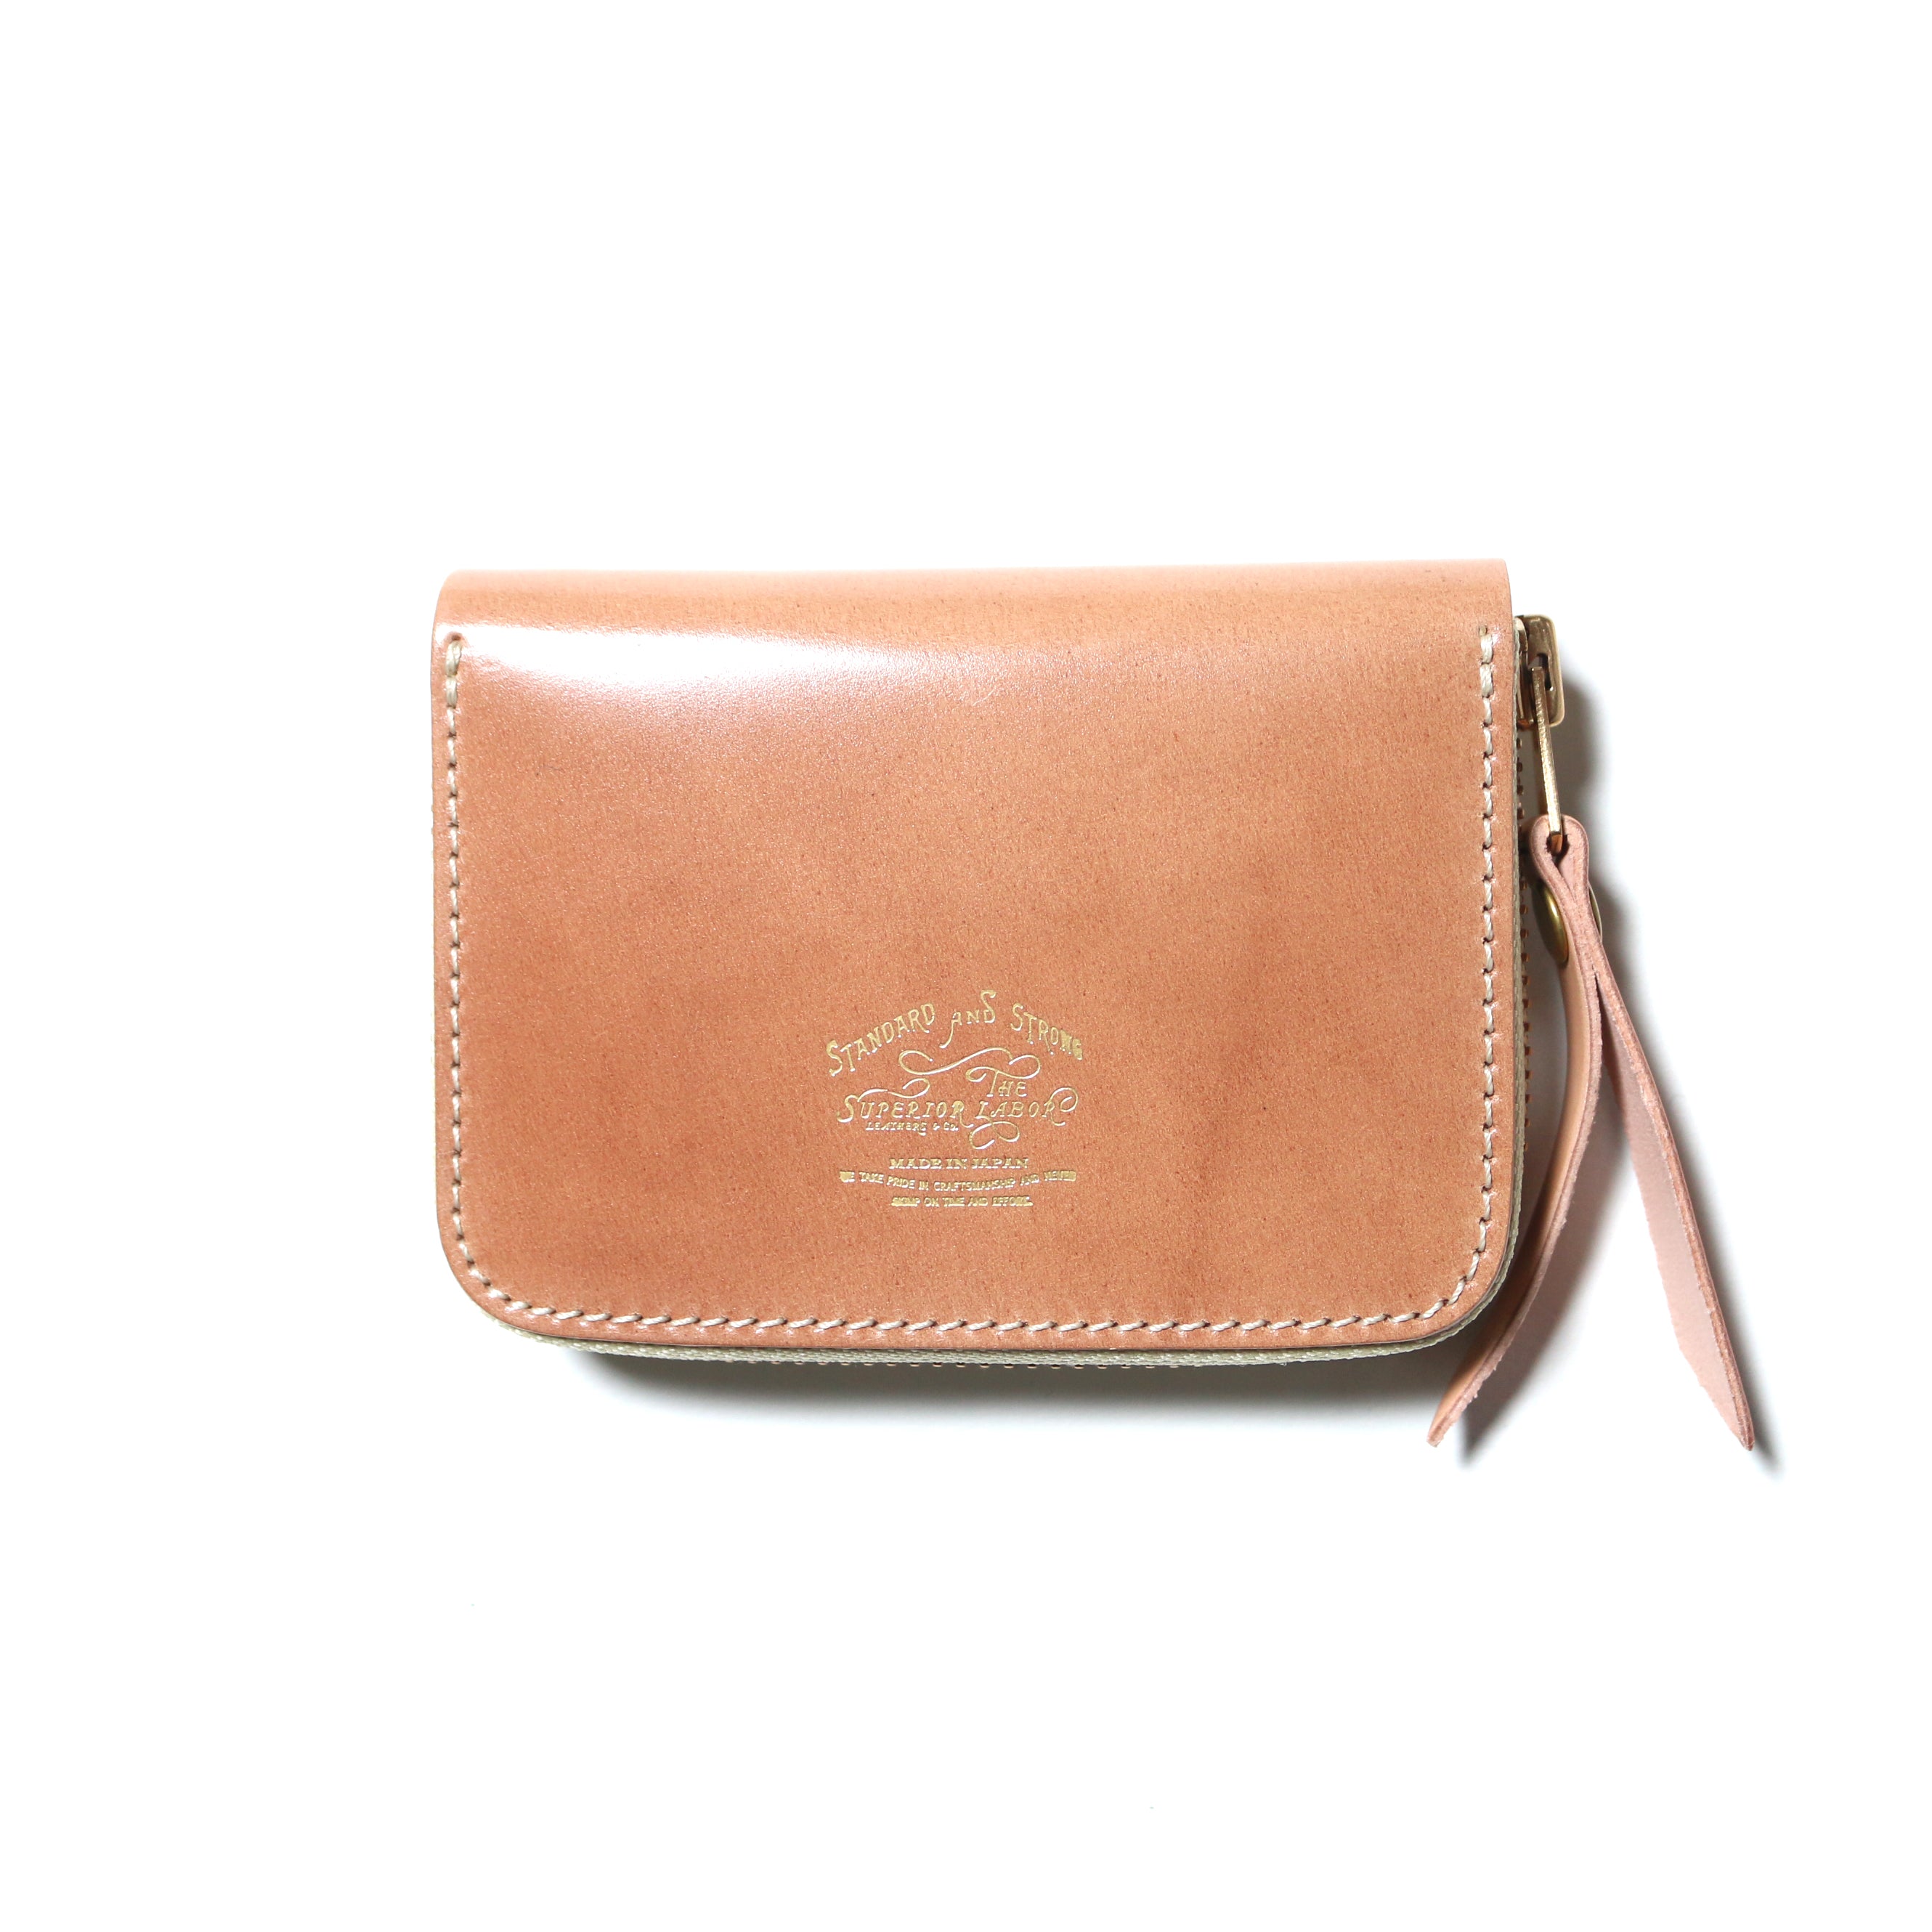 SL193 cordovan zip small wallet | THE SUPERIOR LABOR / T.S.L CUB 